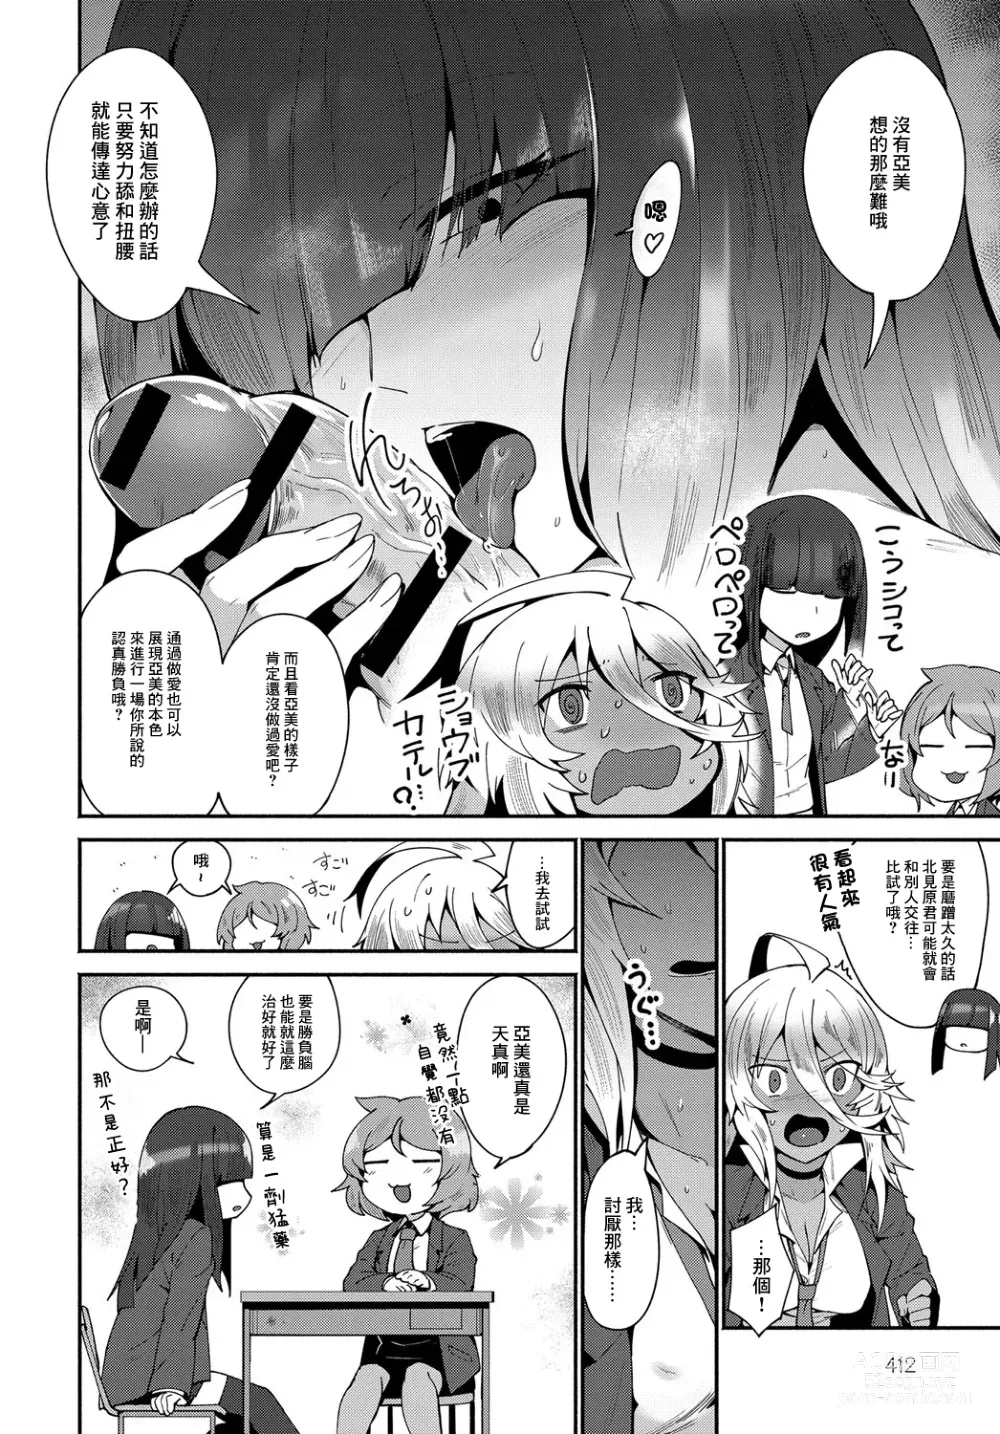 Page 6 of manga AMI FIGHT